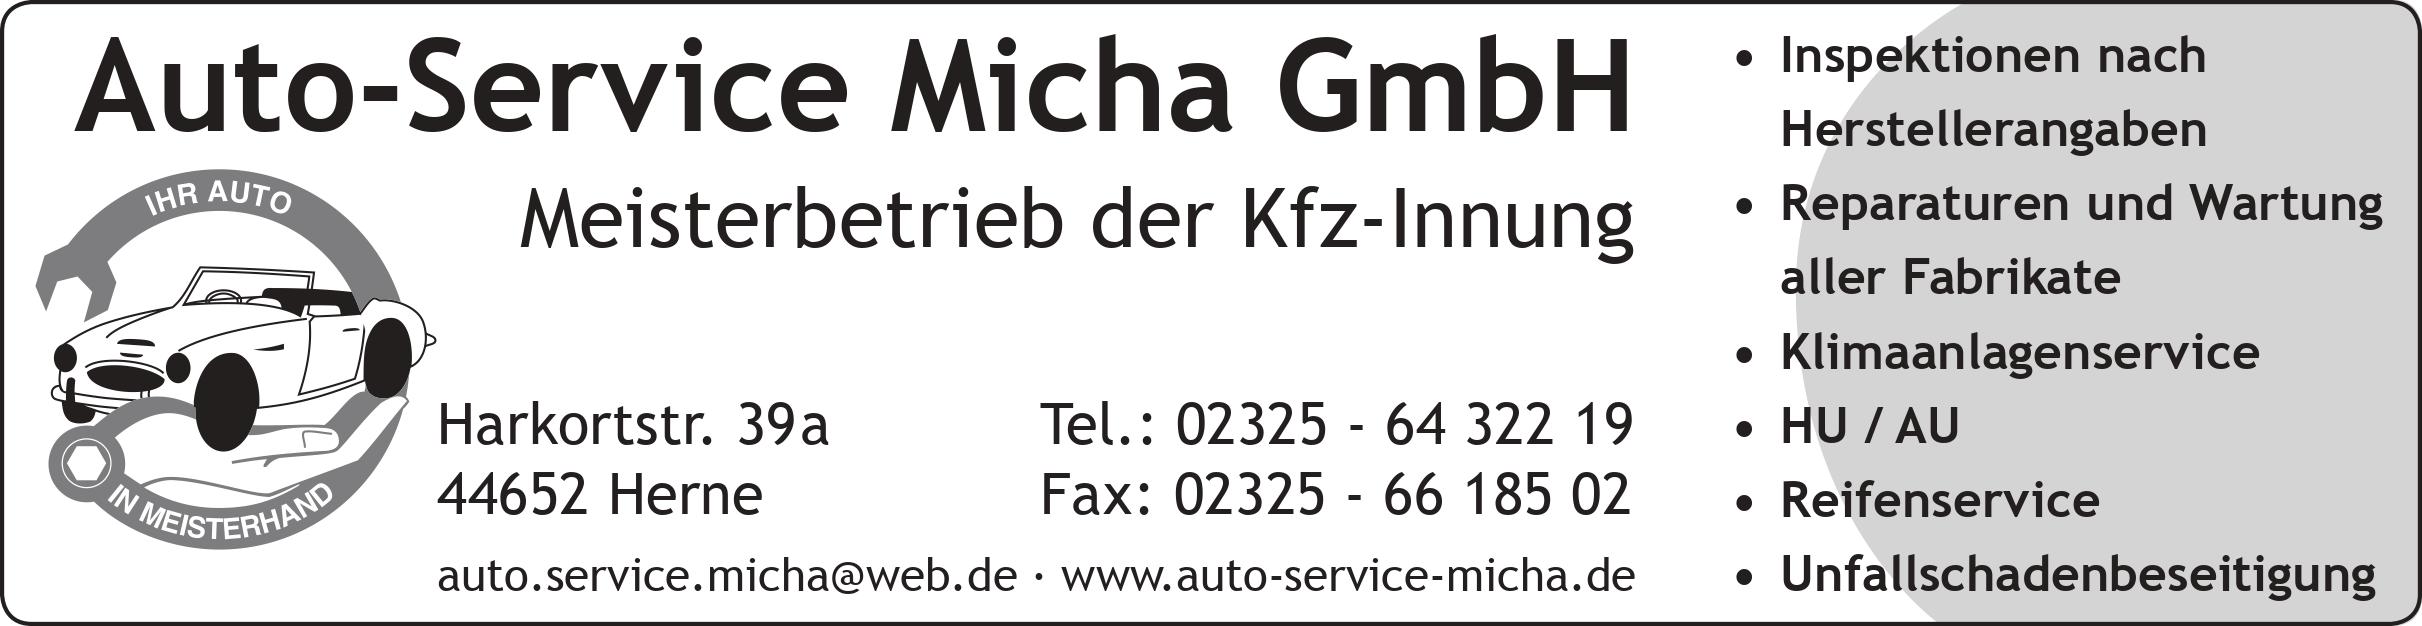 Auto Service Micha